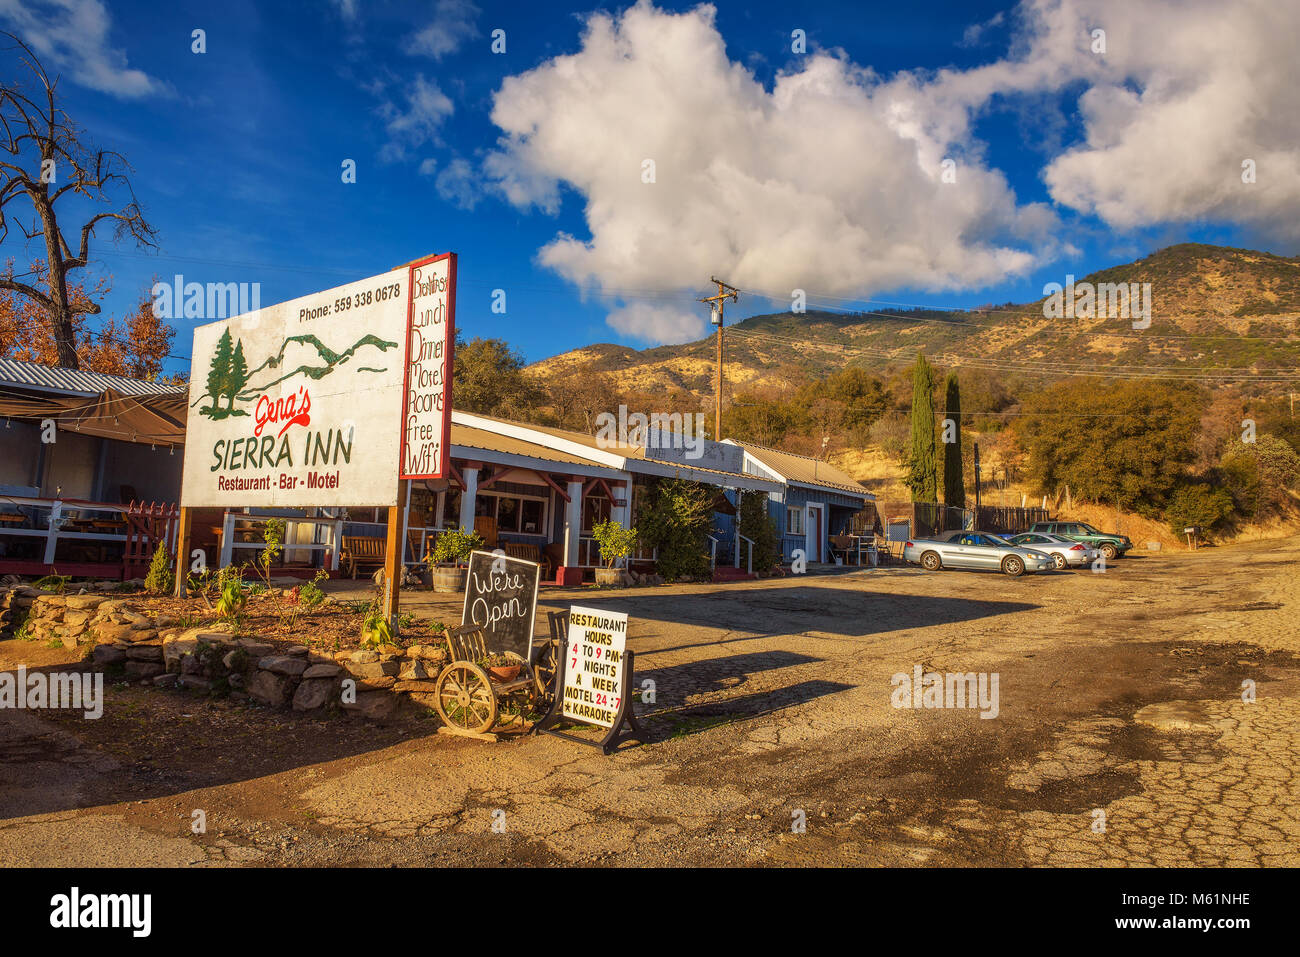 Gena's Sierra Inn motel and restaurant near Sequoia National Park Stock Photo